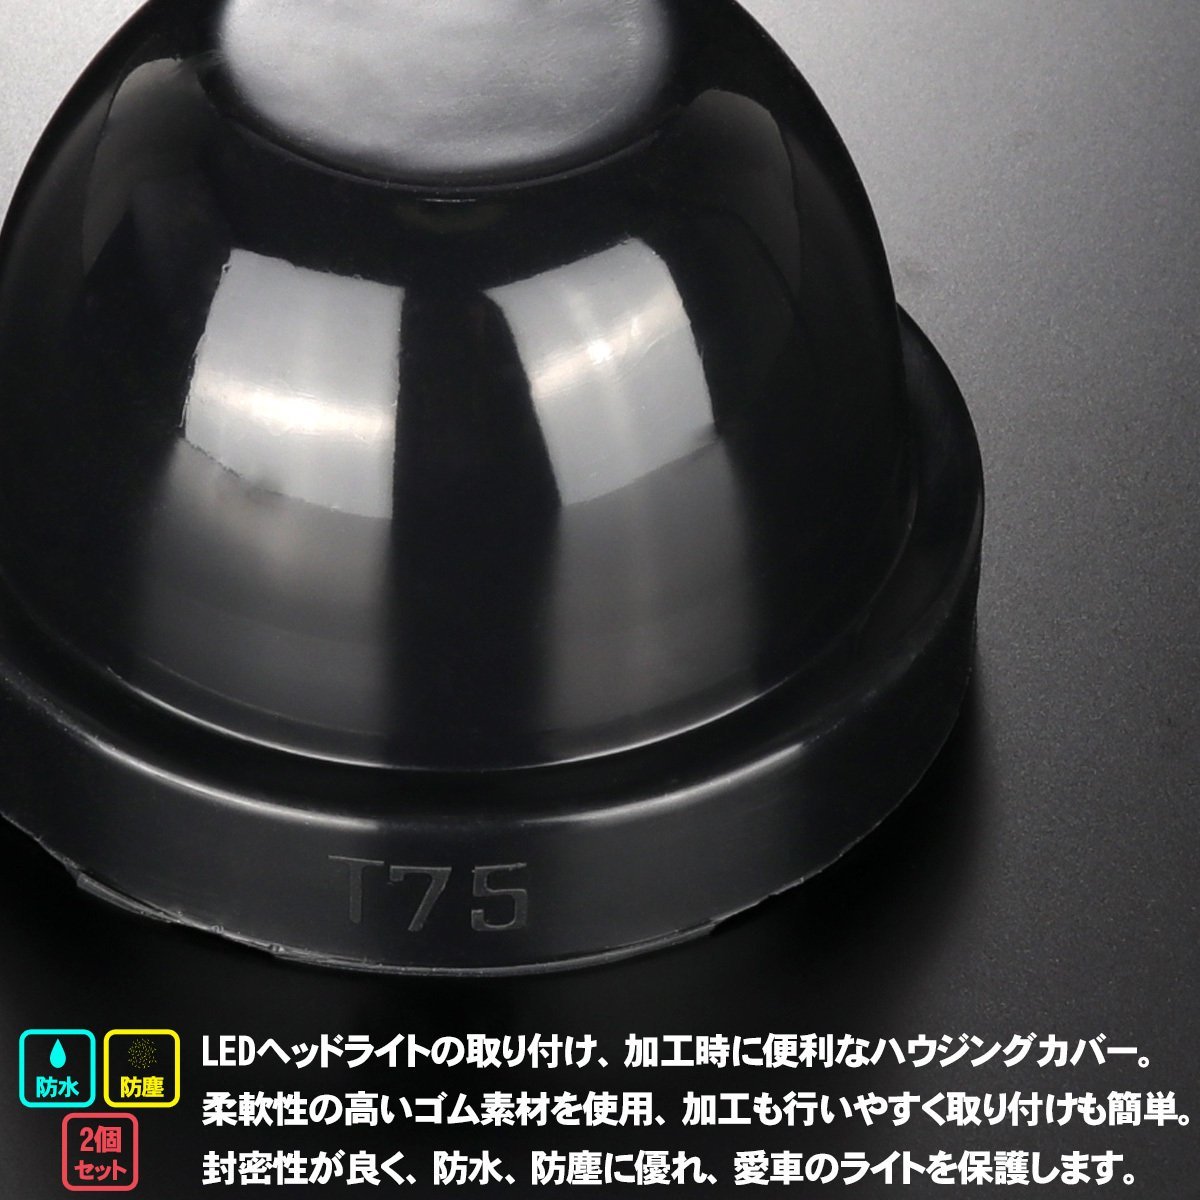 汎用 ゴム製 防水 防塵 ダスト カバー キャップ 2個セット ハウジング穴径75mm LED HID ヘッドライト 取り付け 加工時に VZ056_画像2